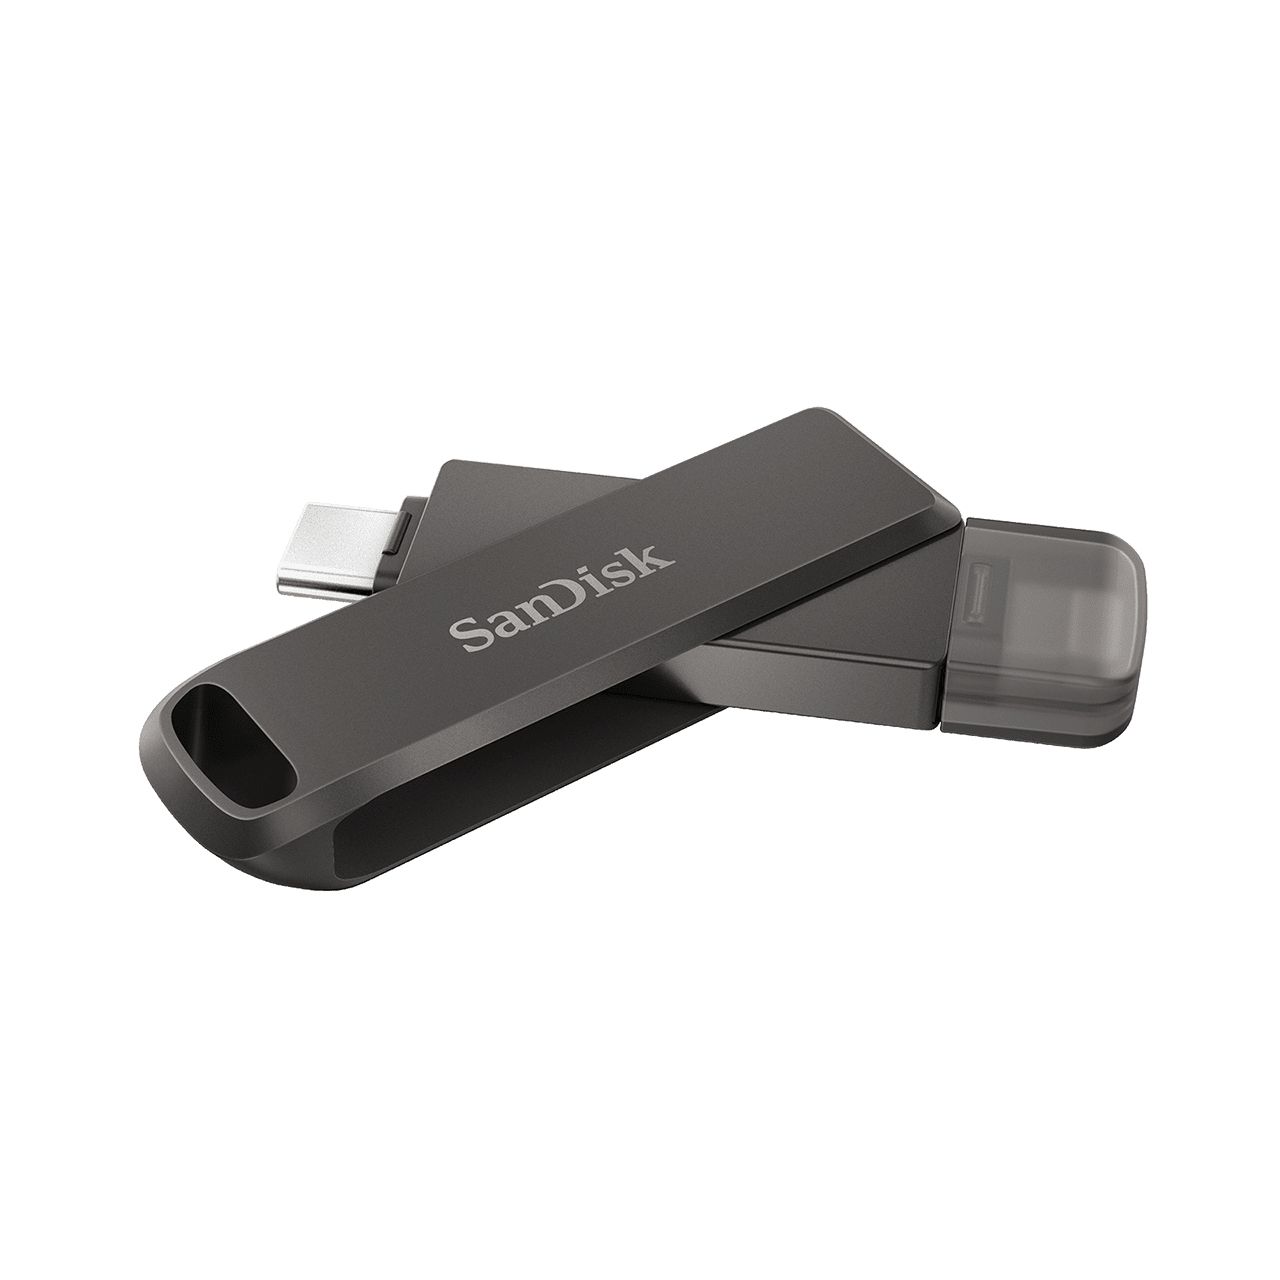 SDIX70N-064G-GN6NN - Pendrive SANDISK iXpand 64Gb USB-C 3.0 Lightning Negro (SDIX70N-064G-GN6NN)